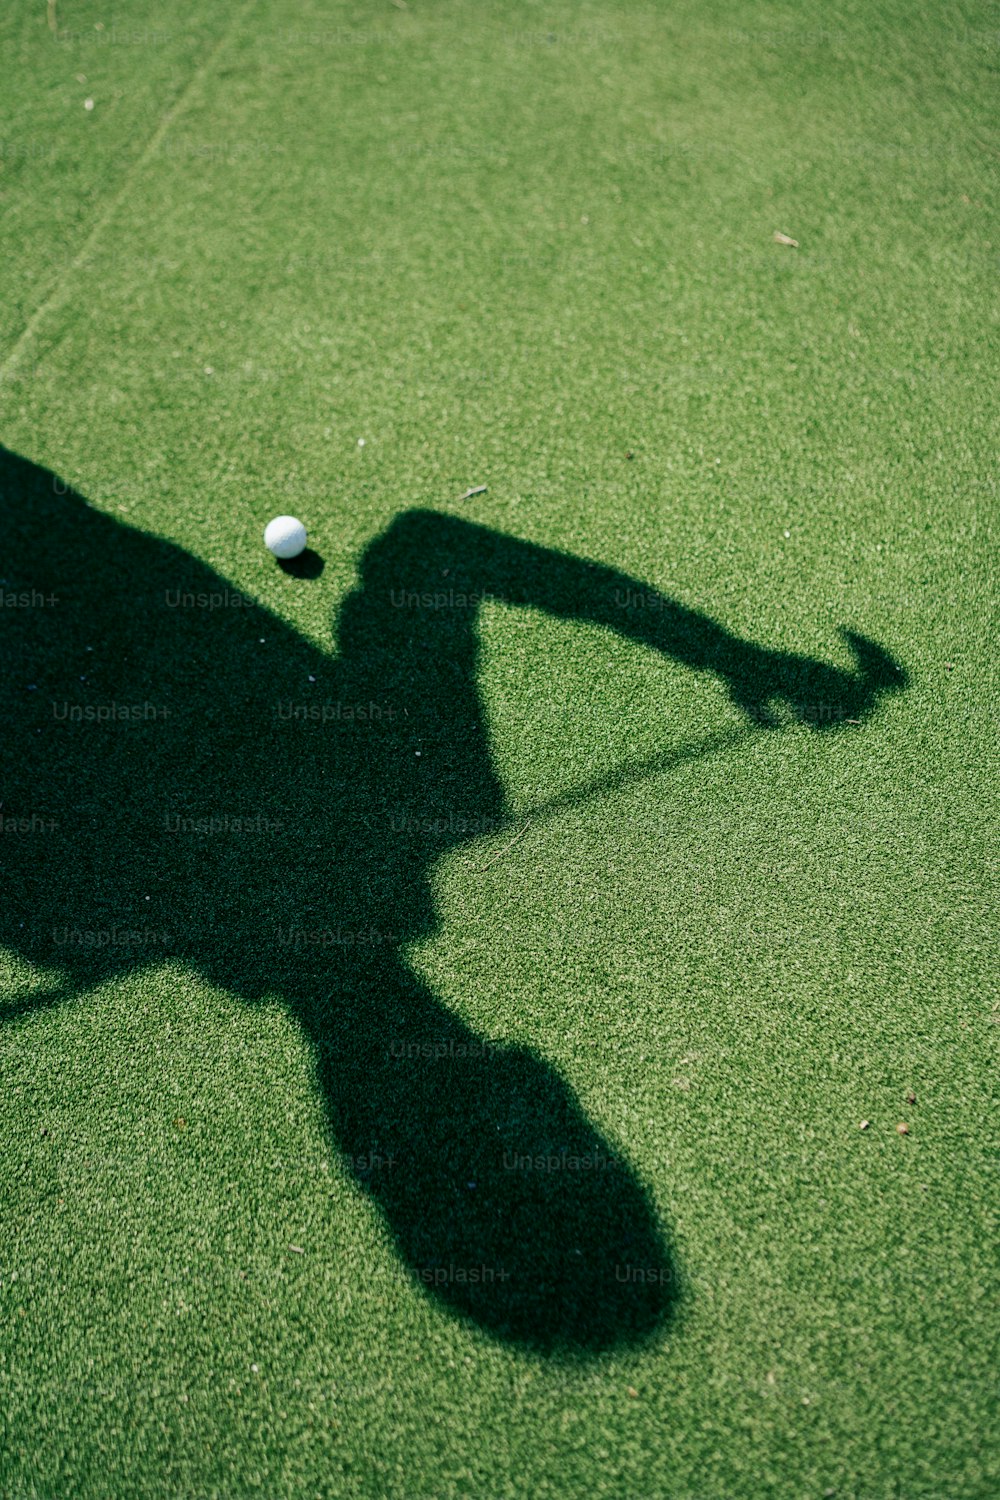 テニスボールを打つ人の影